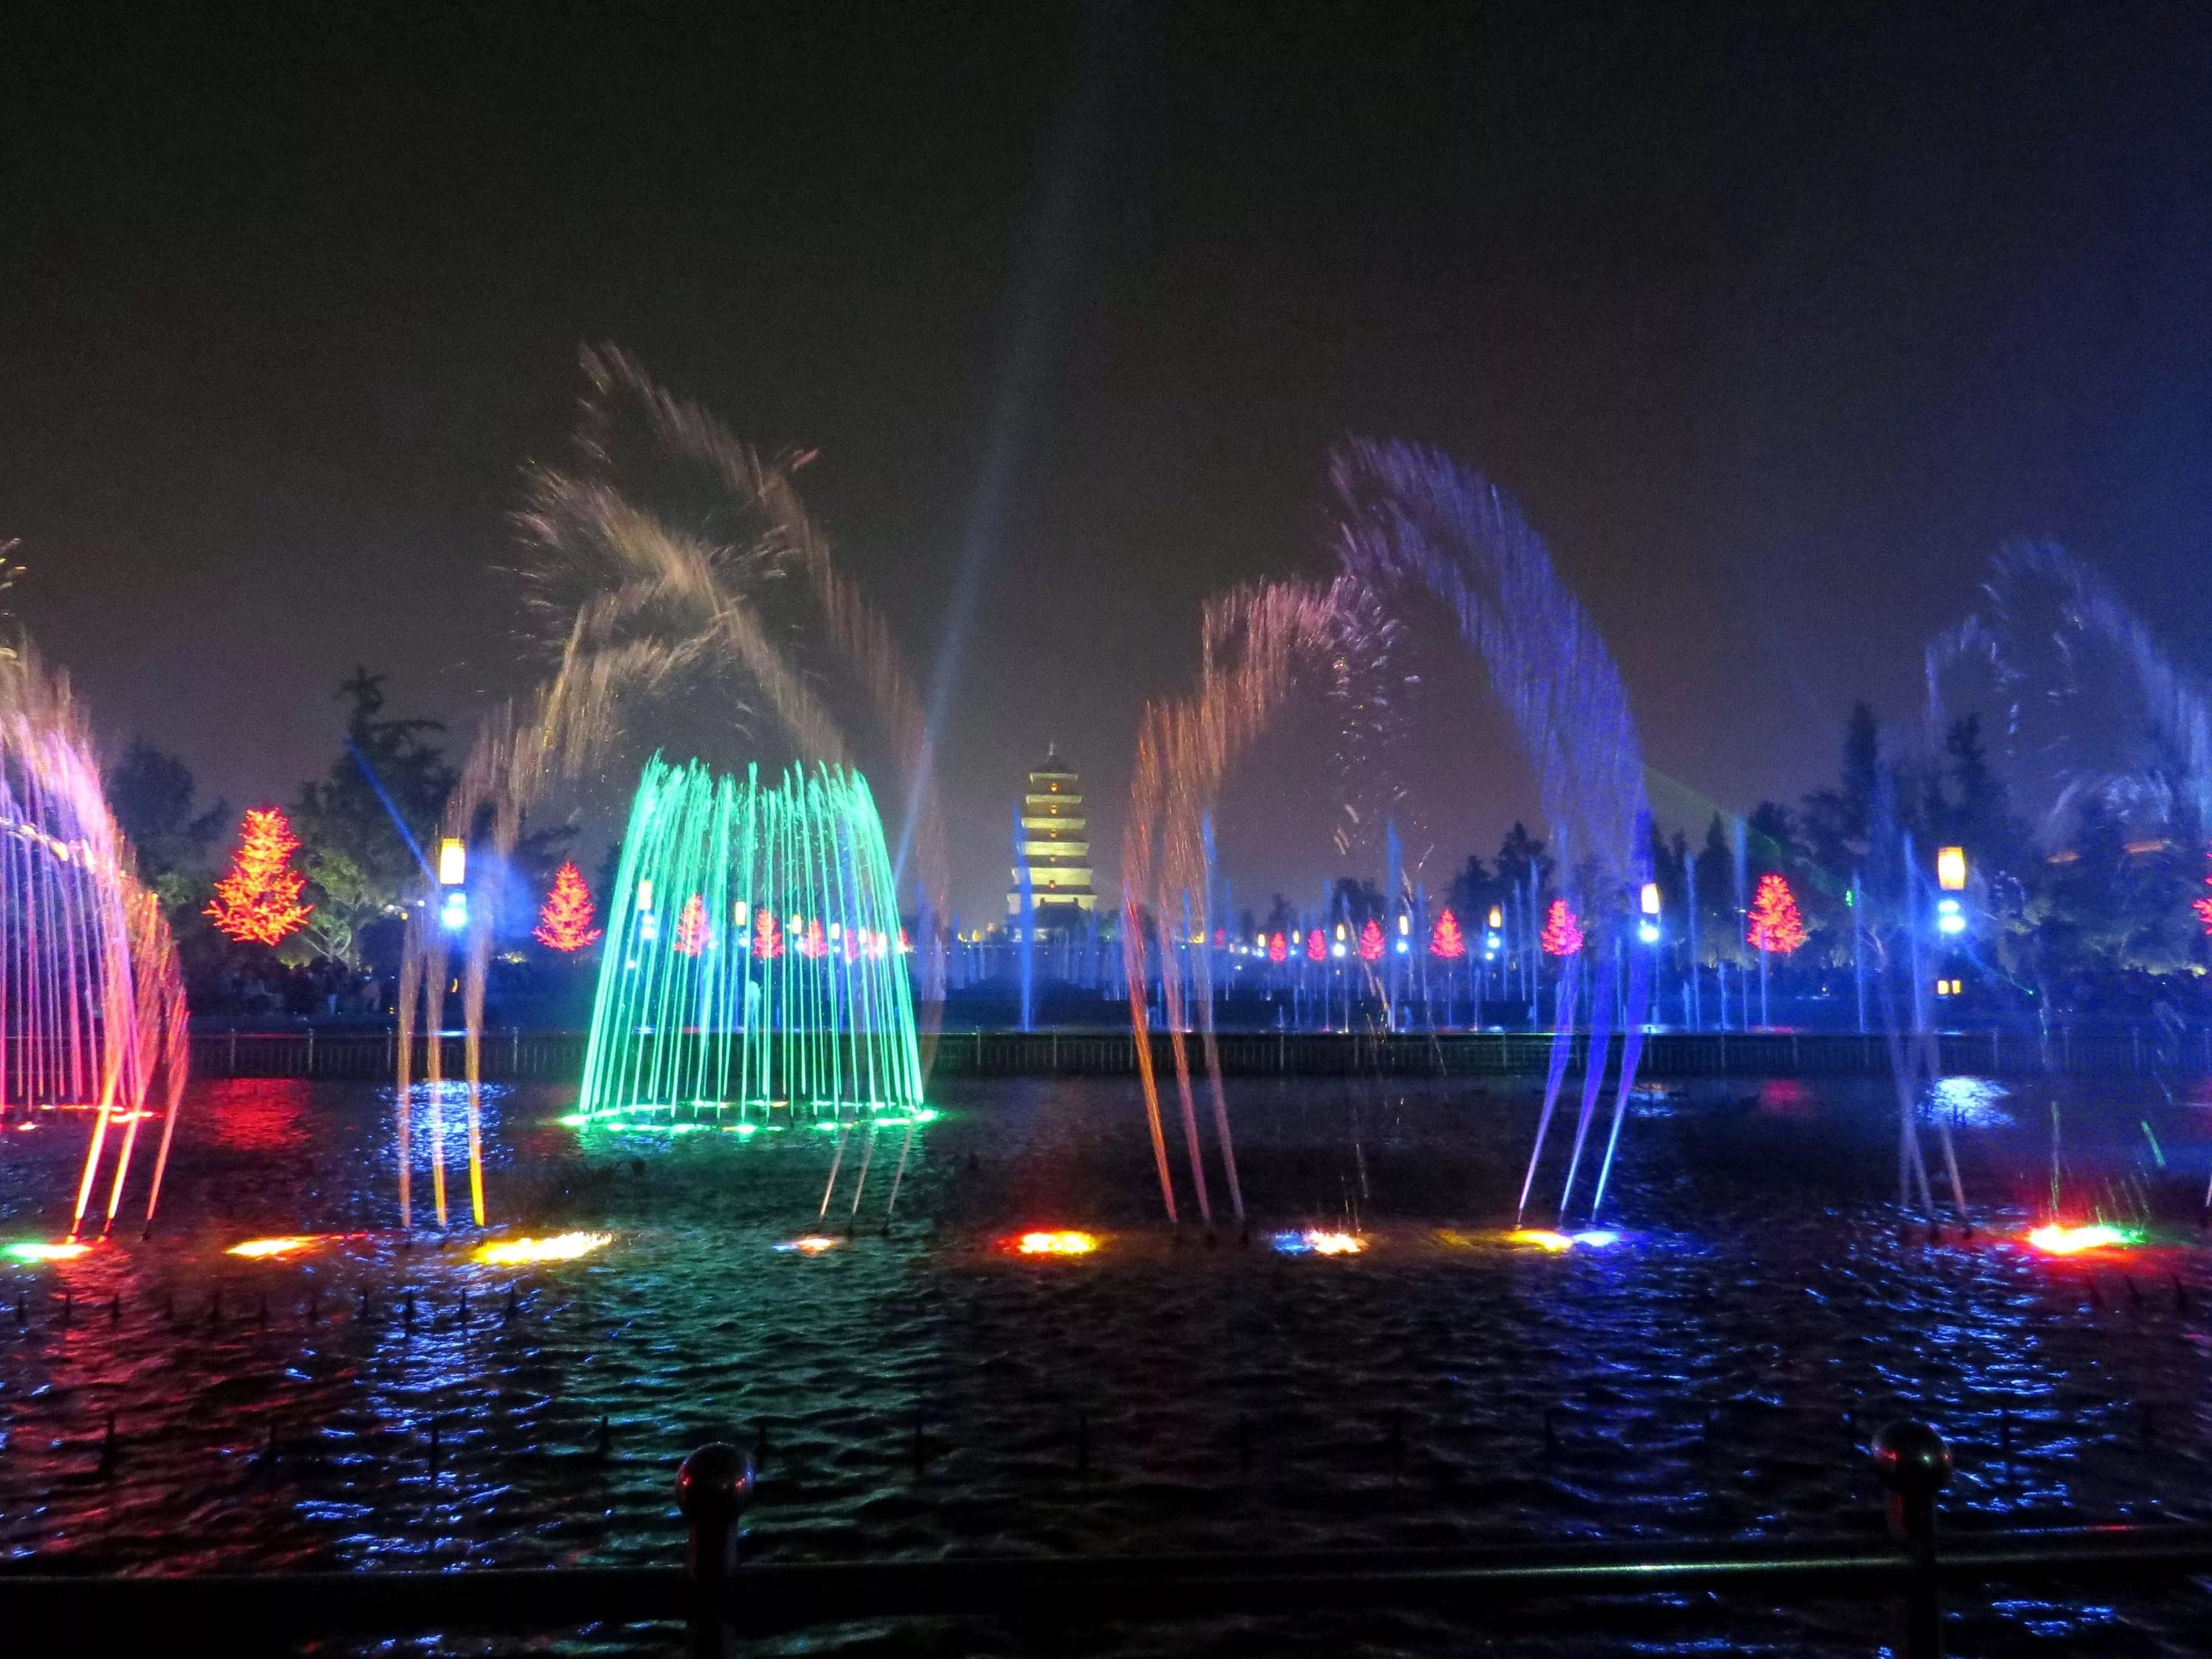 اماكن سياحية في جدة المملكة العربية السعودية صيف 2020 